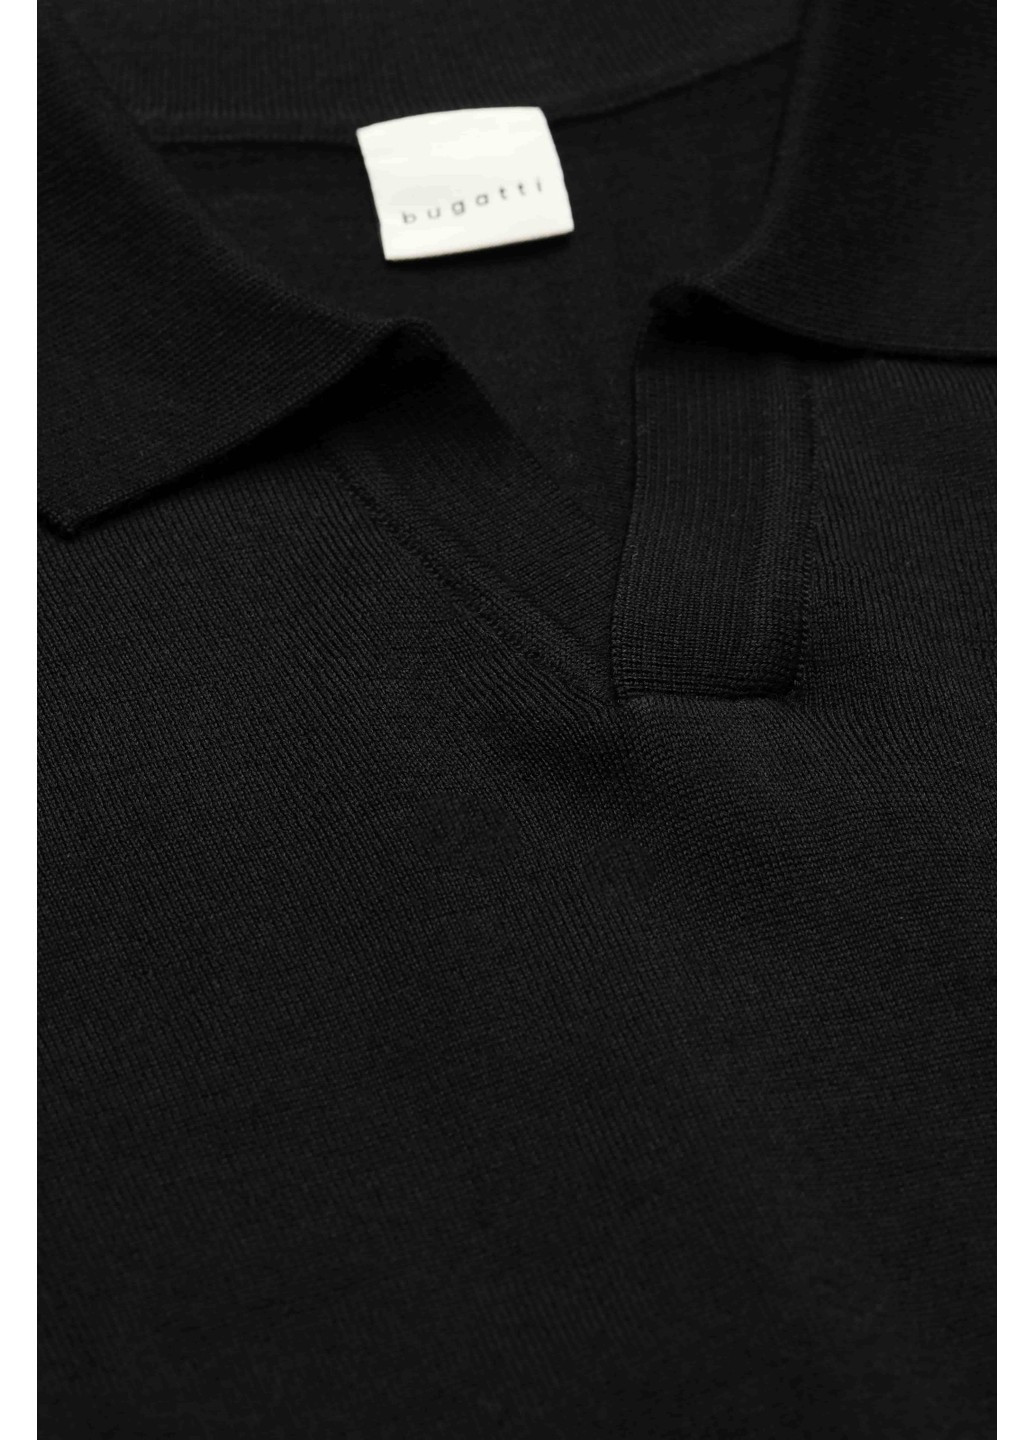 Черная футболка-мужское поло черный для мужчин Bugatti в полоску